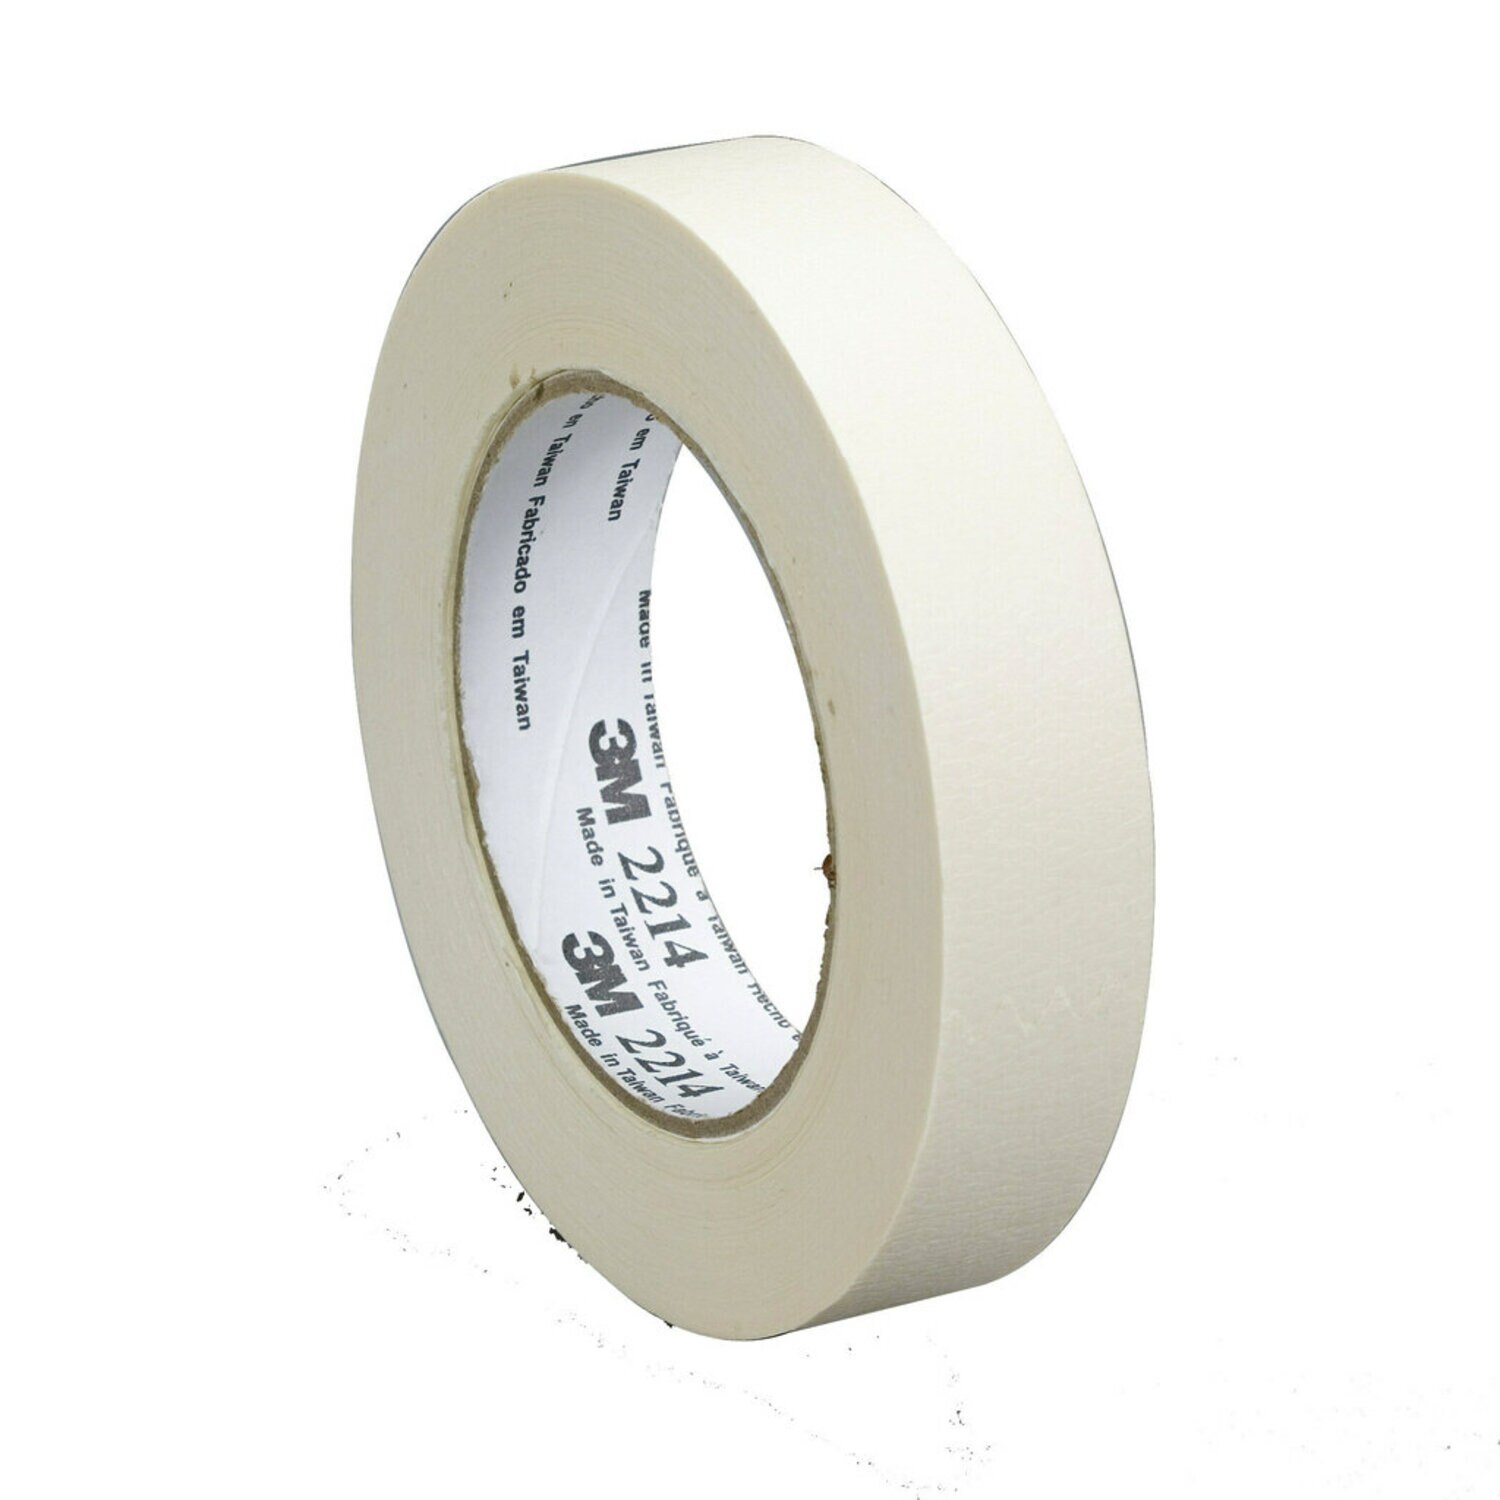 7100245645 - 3M Paper Masking Tape 2214, Tan, 24 mm x 50 m, 5.4 mil, 36 Rolls/Case